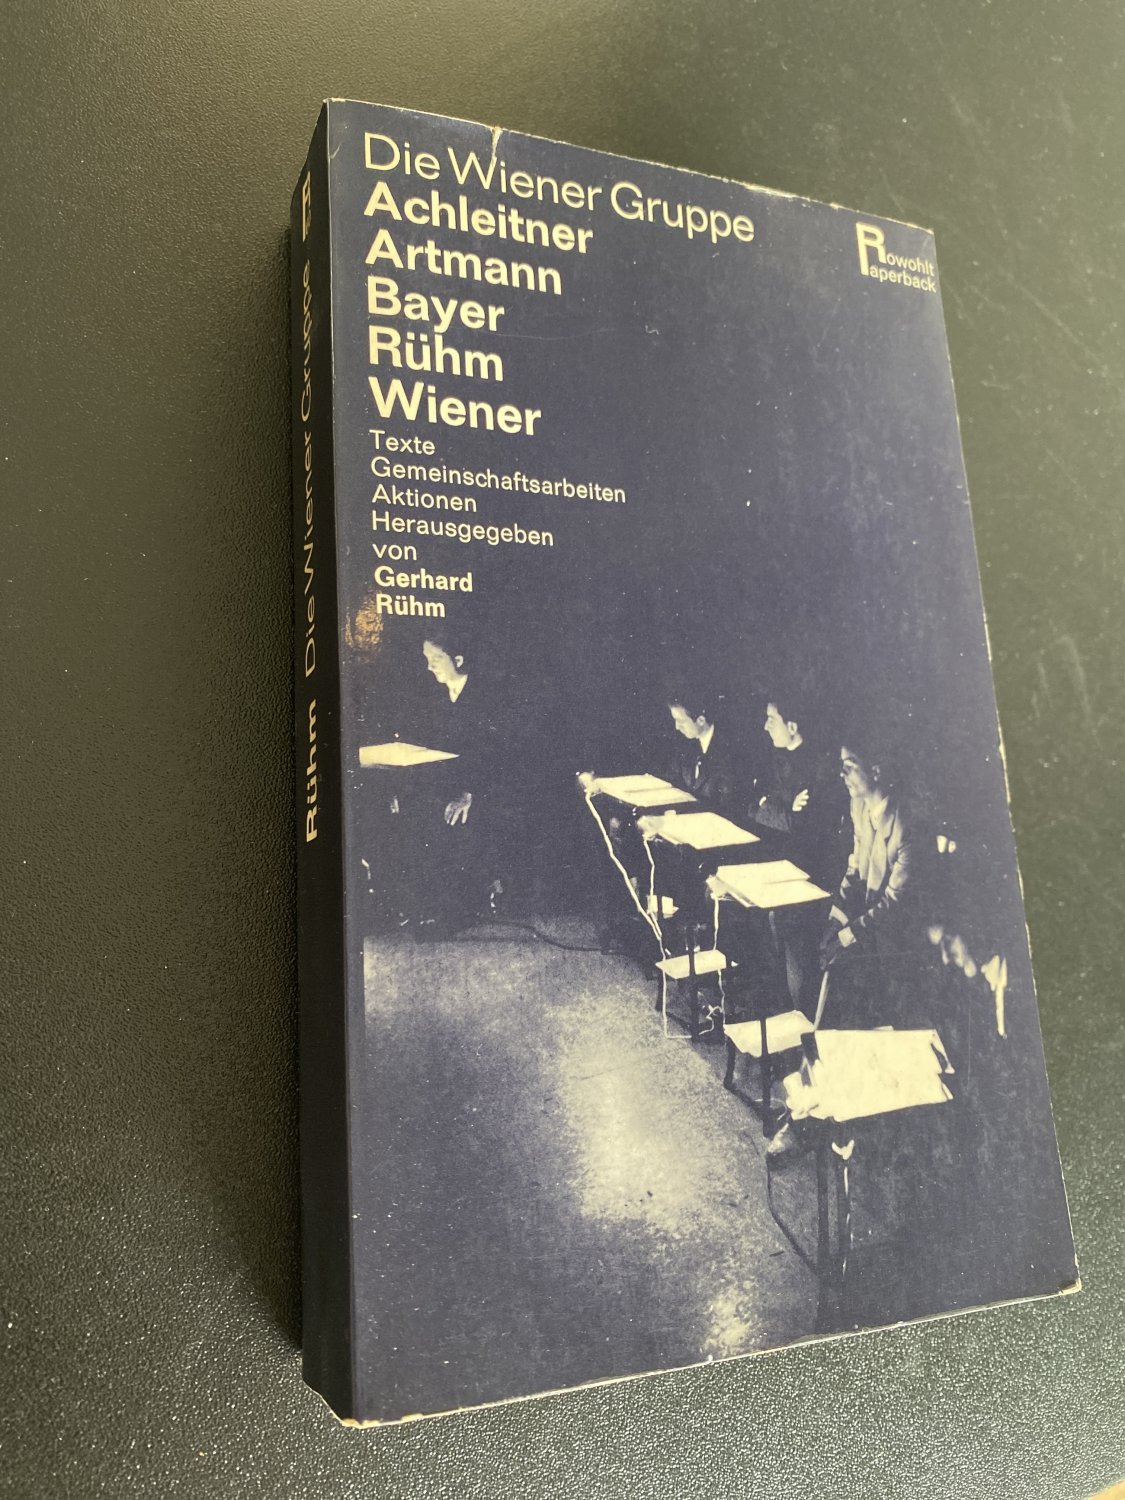 Die Wiener Gruppe/ The Vienna Group by Peter Weibel